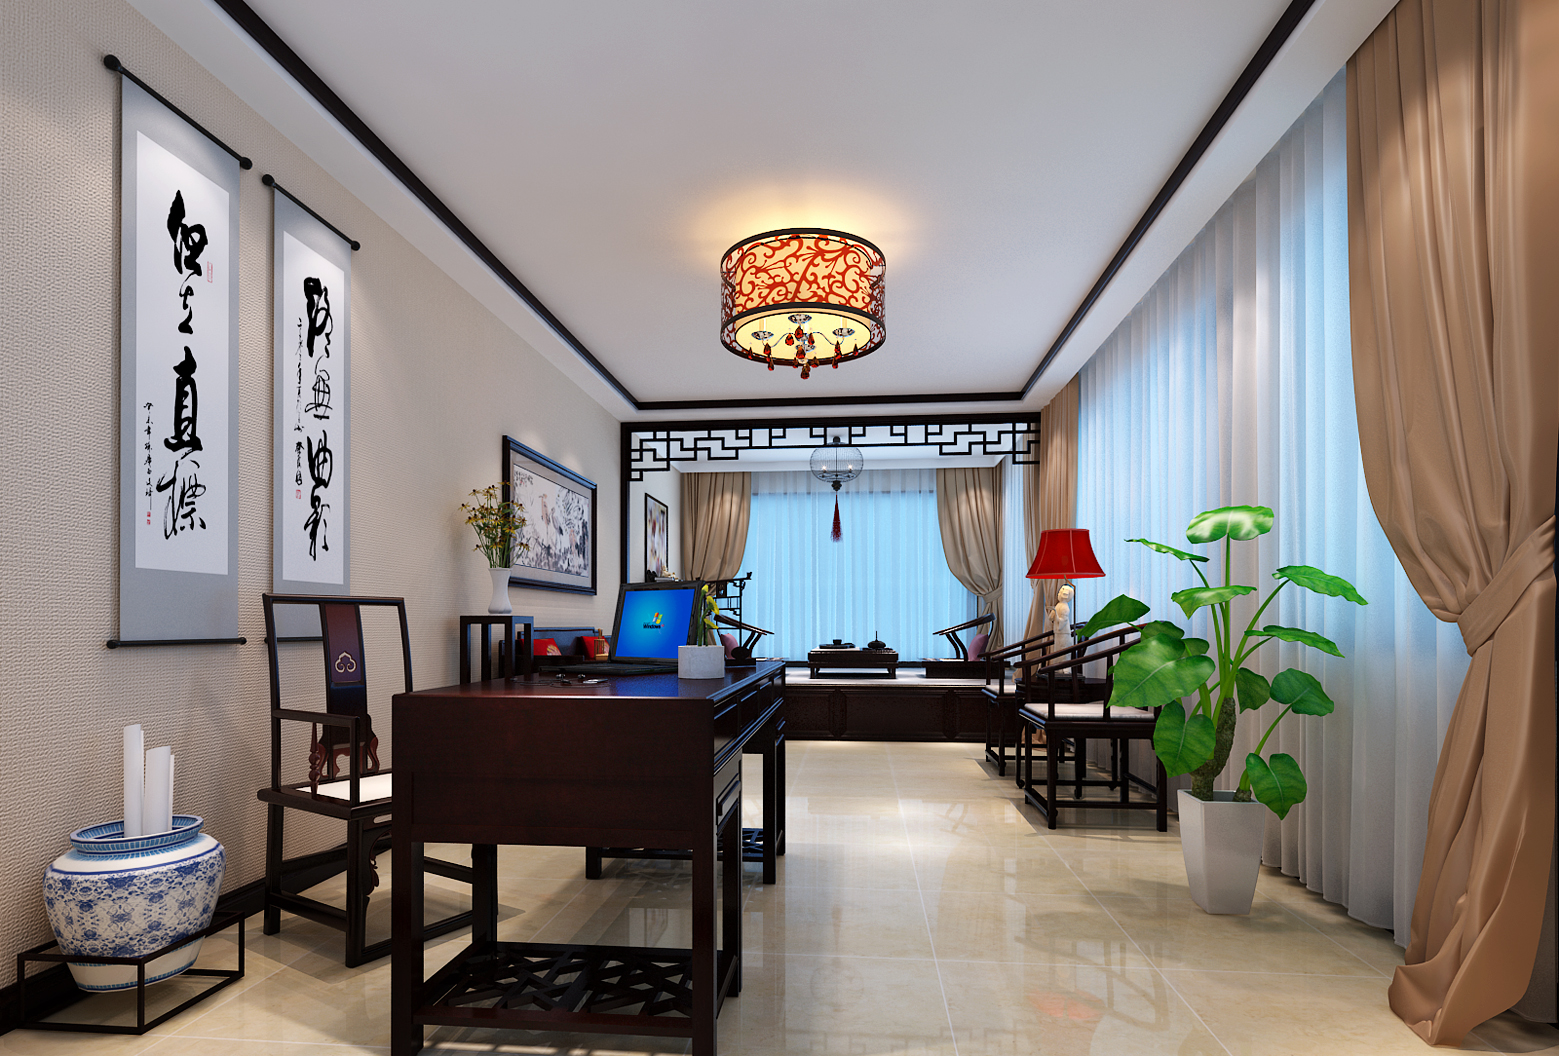 中式风格 休闲度假 装修效果图 实创装饰 书房图片来自上海实创-装修设计效果图在185平宁静清幽中式装修设计的分享